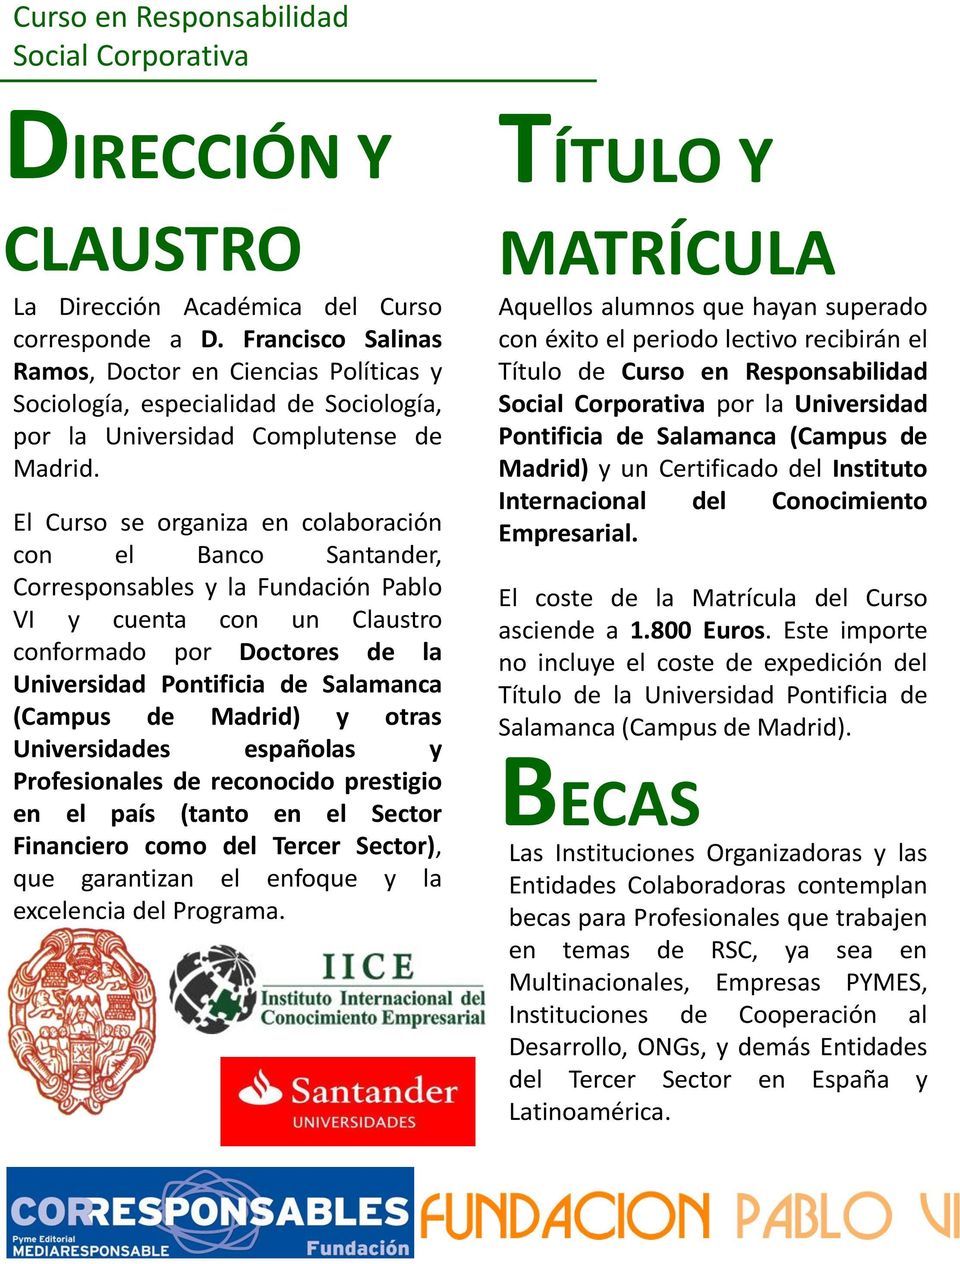 El Curso se organiza en colaboración con el Banco Santander, Corresponsables y la Fundación Pablo VI y cuenta con un Claustro conformado por Doctores de la Universidad Pontificia de Salamanca (Campus